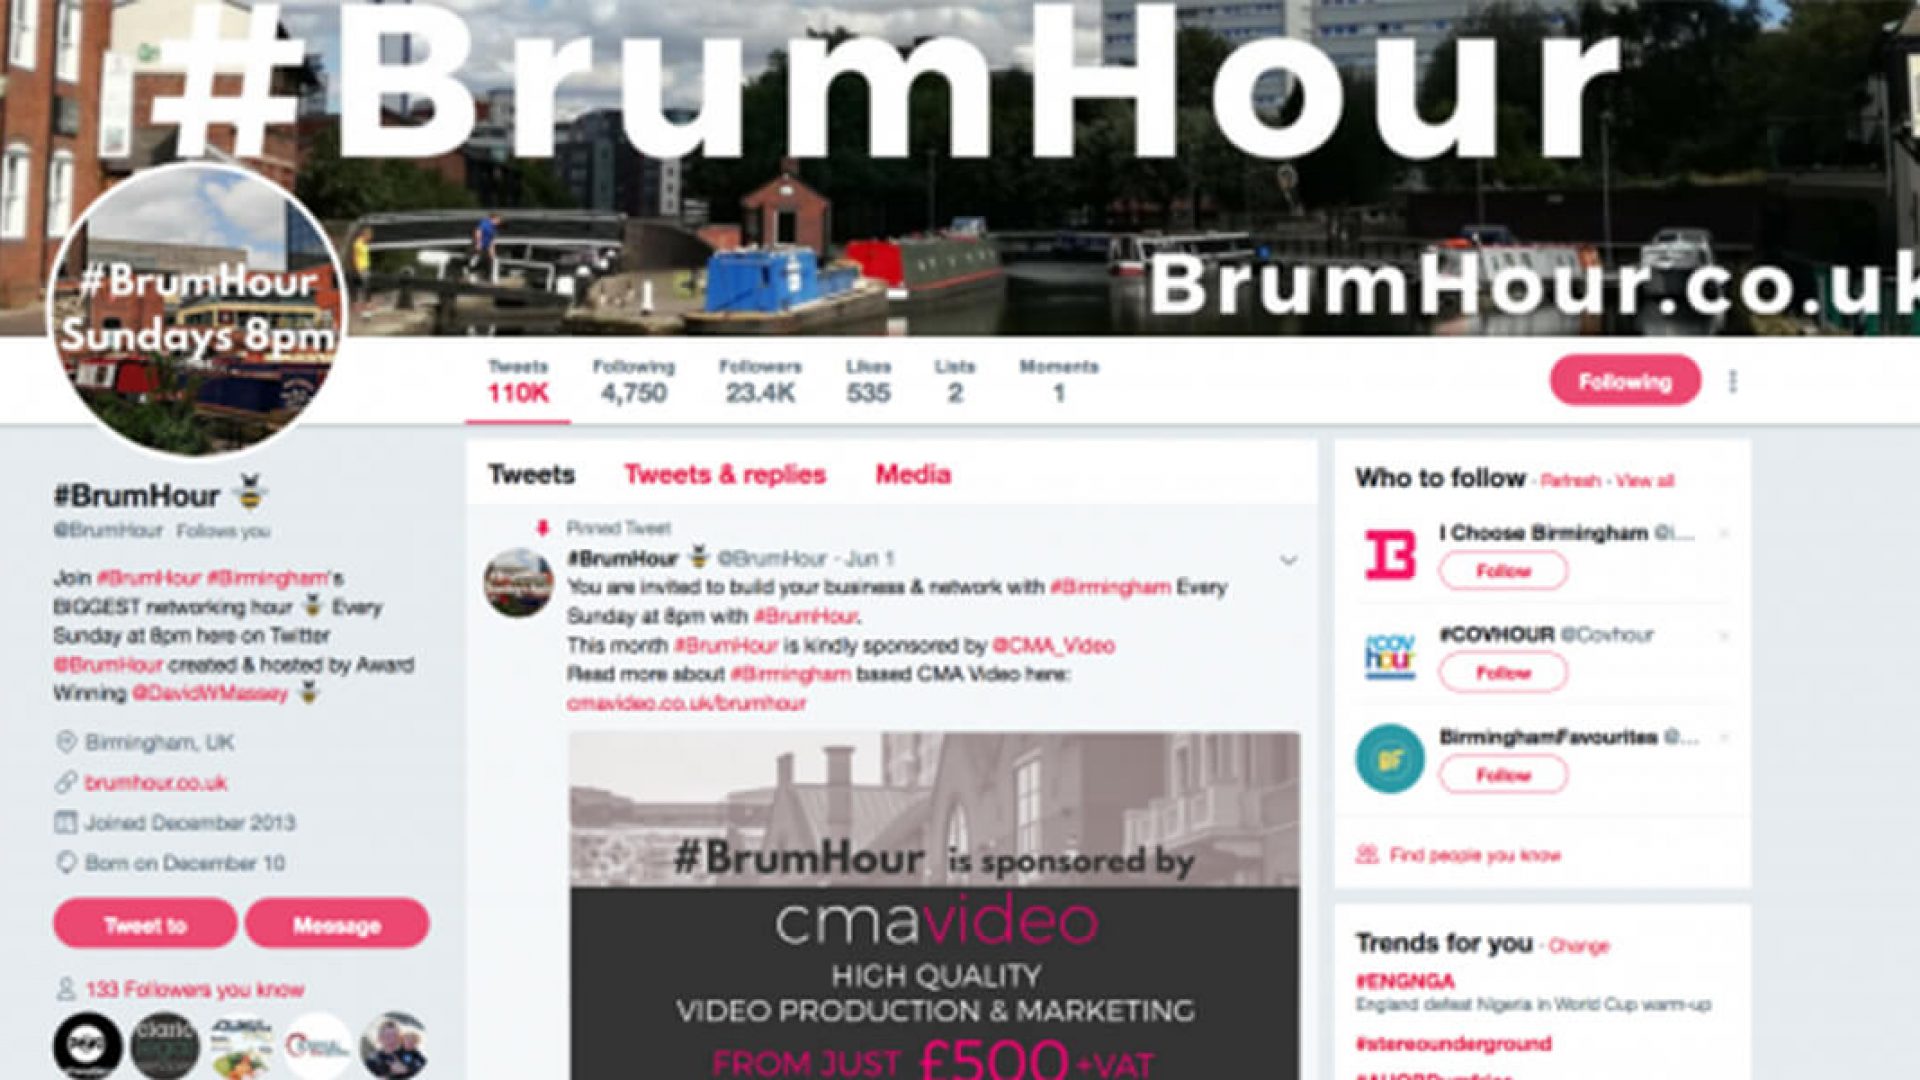 Why We’re Sponsoring BrumHour